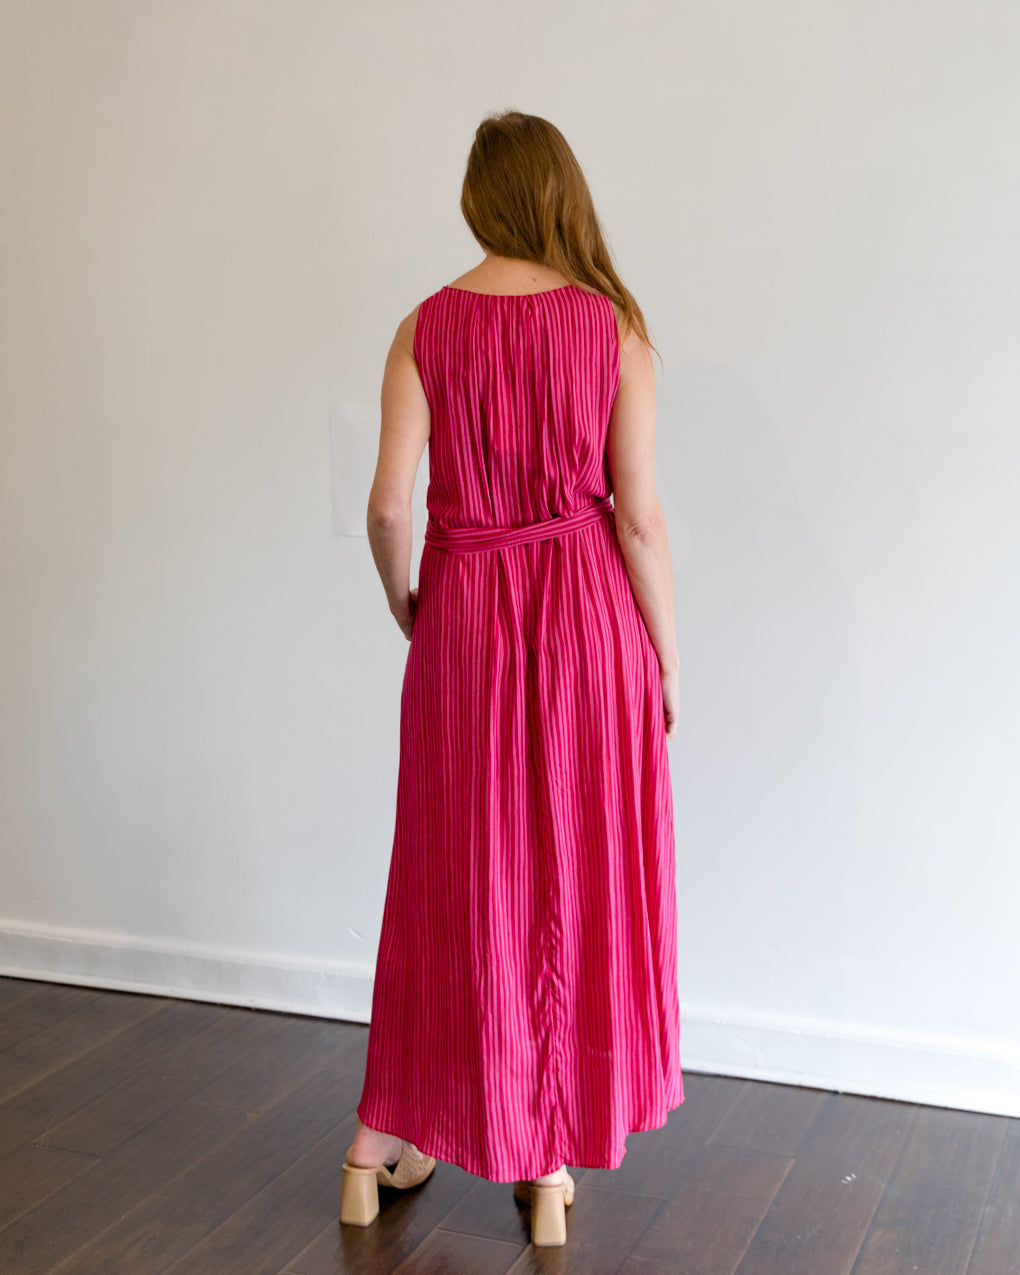 Natalie Martin Tova Maxi Dress in Fuchsia Stripe With Sash